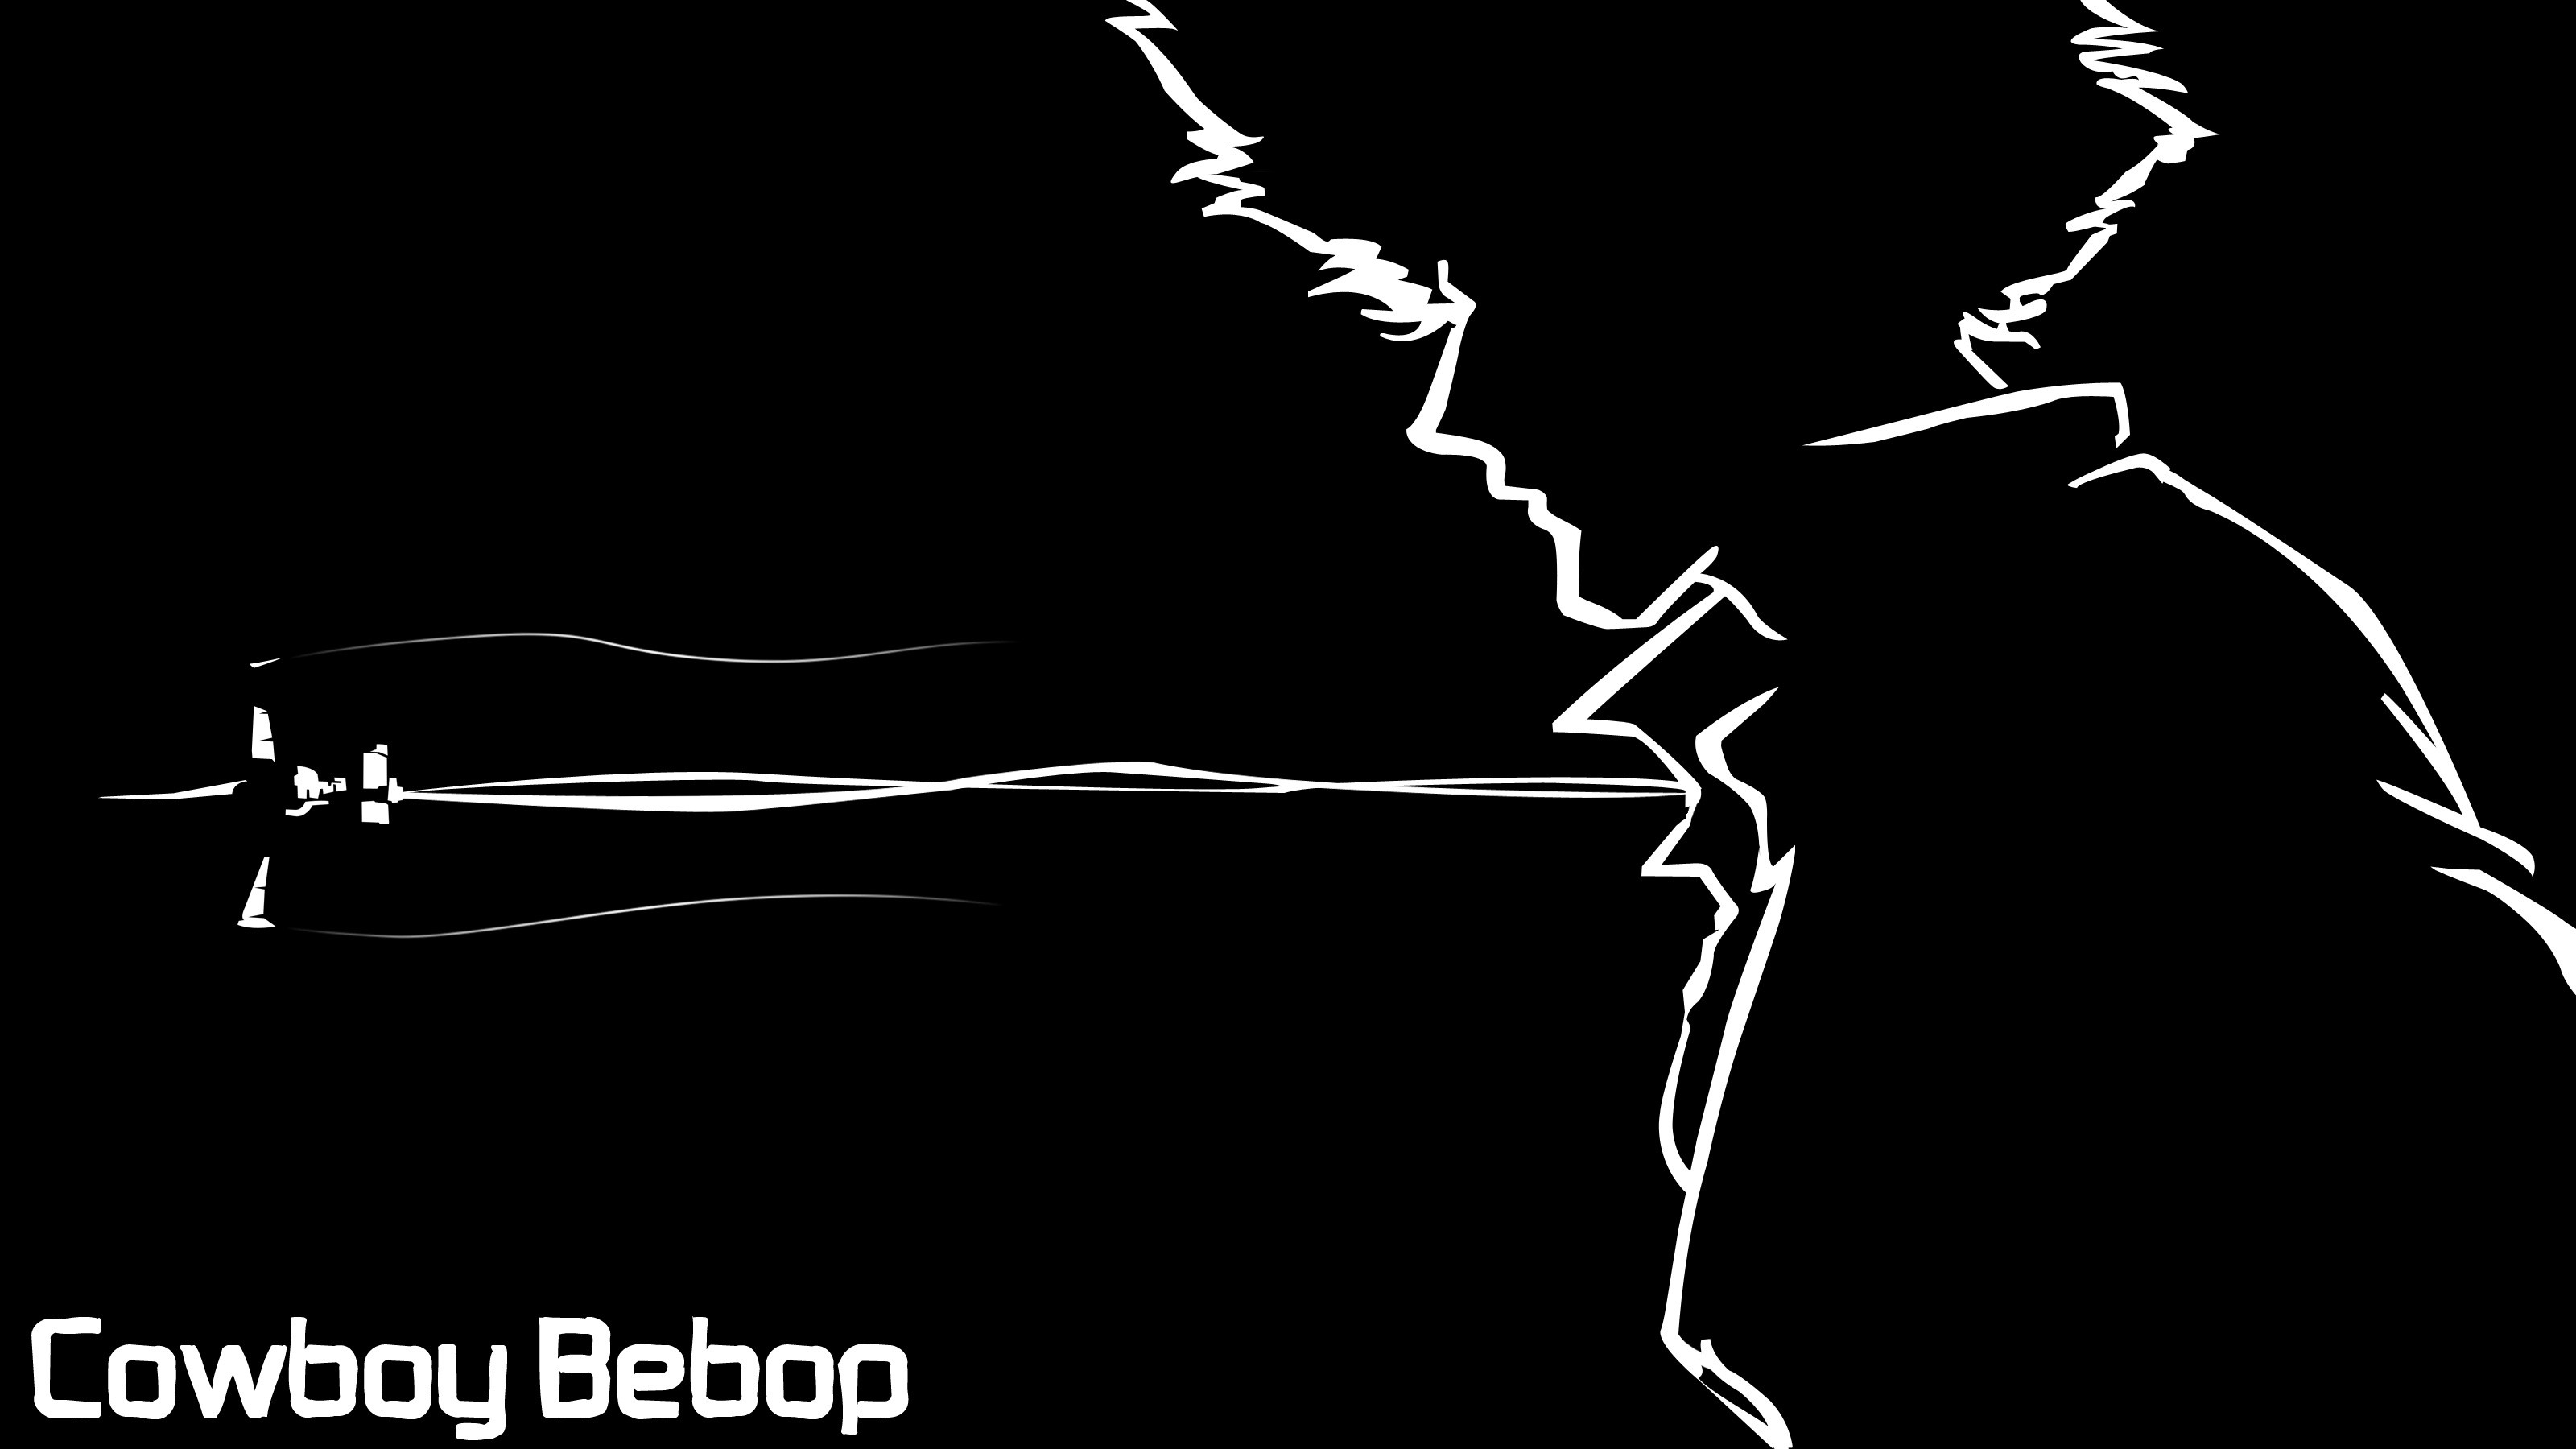 Cowboy Bebop Wallpapers  Top 25 Best Cowboy Bebop Backgrounds Download